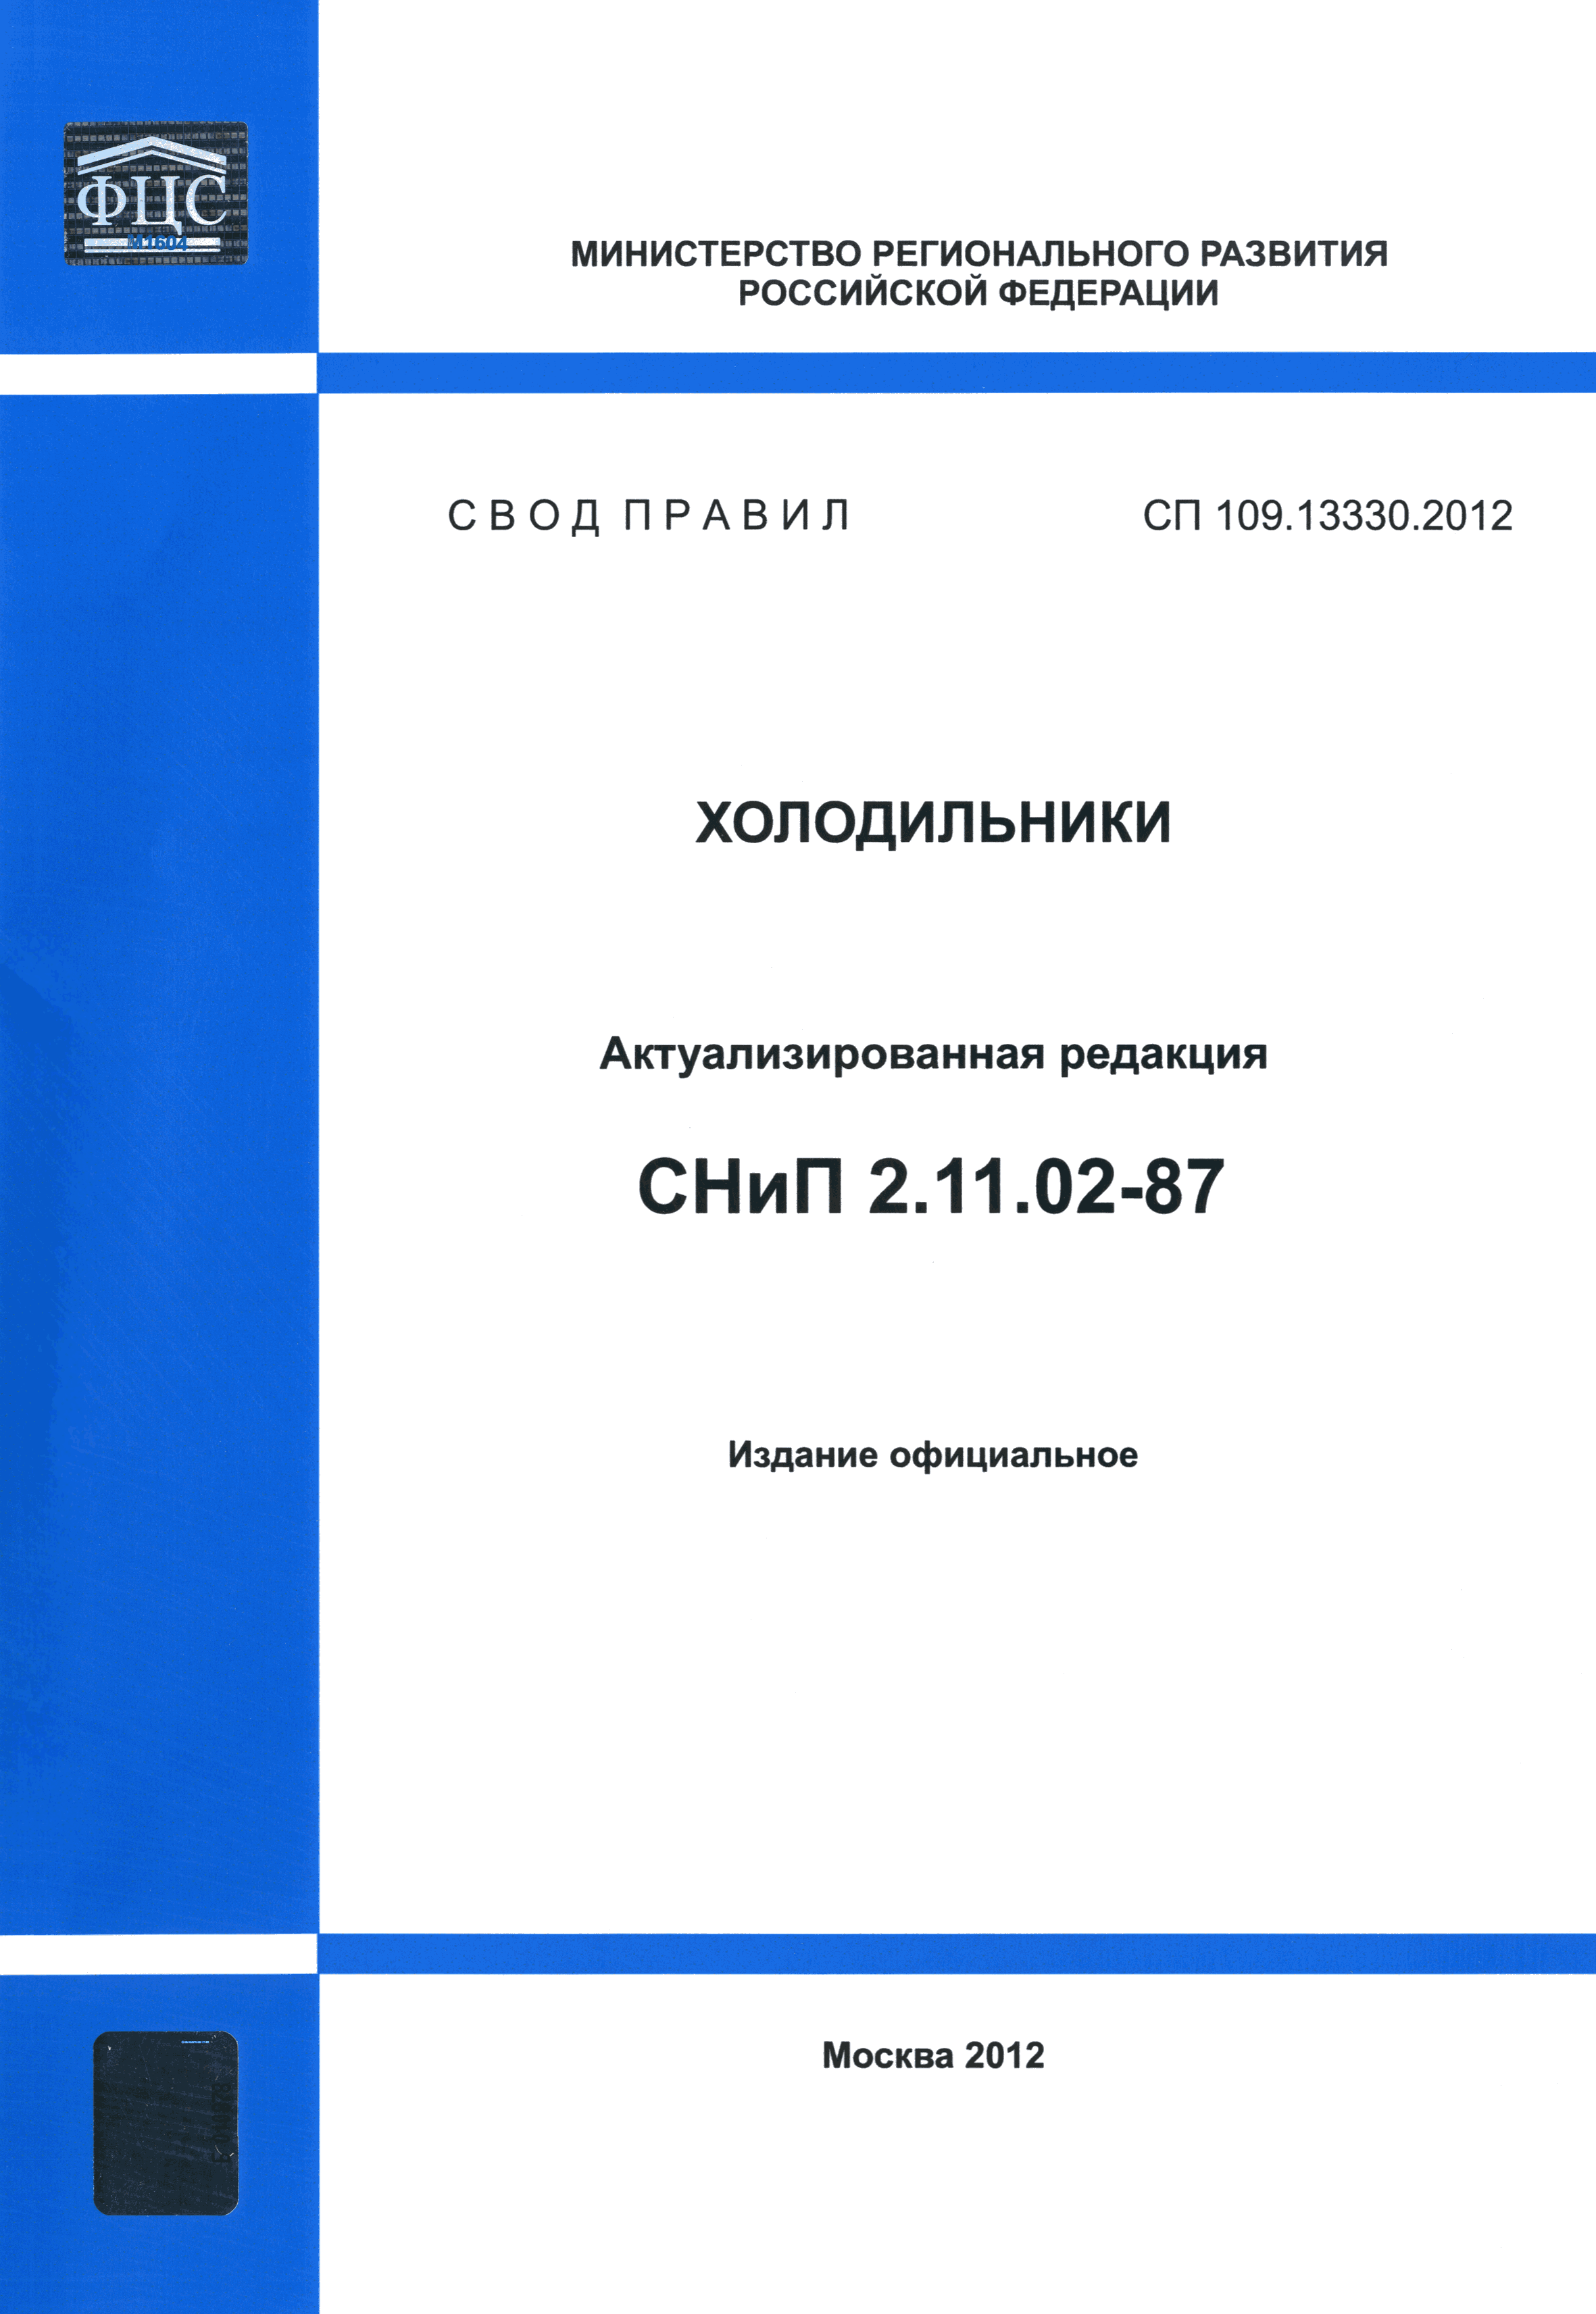 СП 109.13330.2012